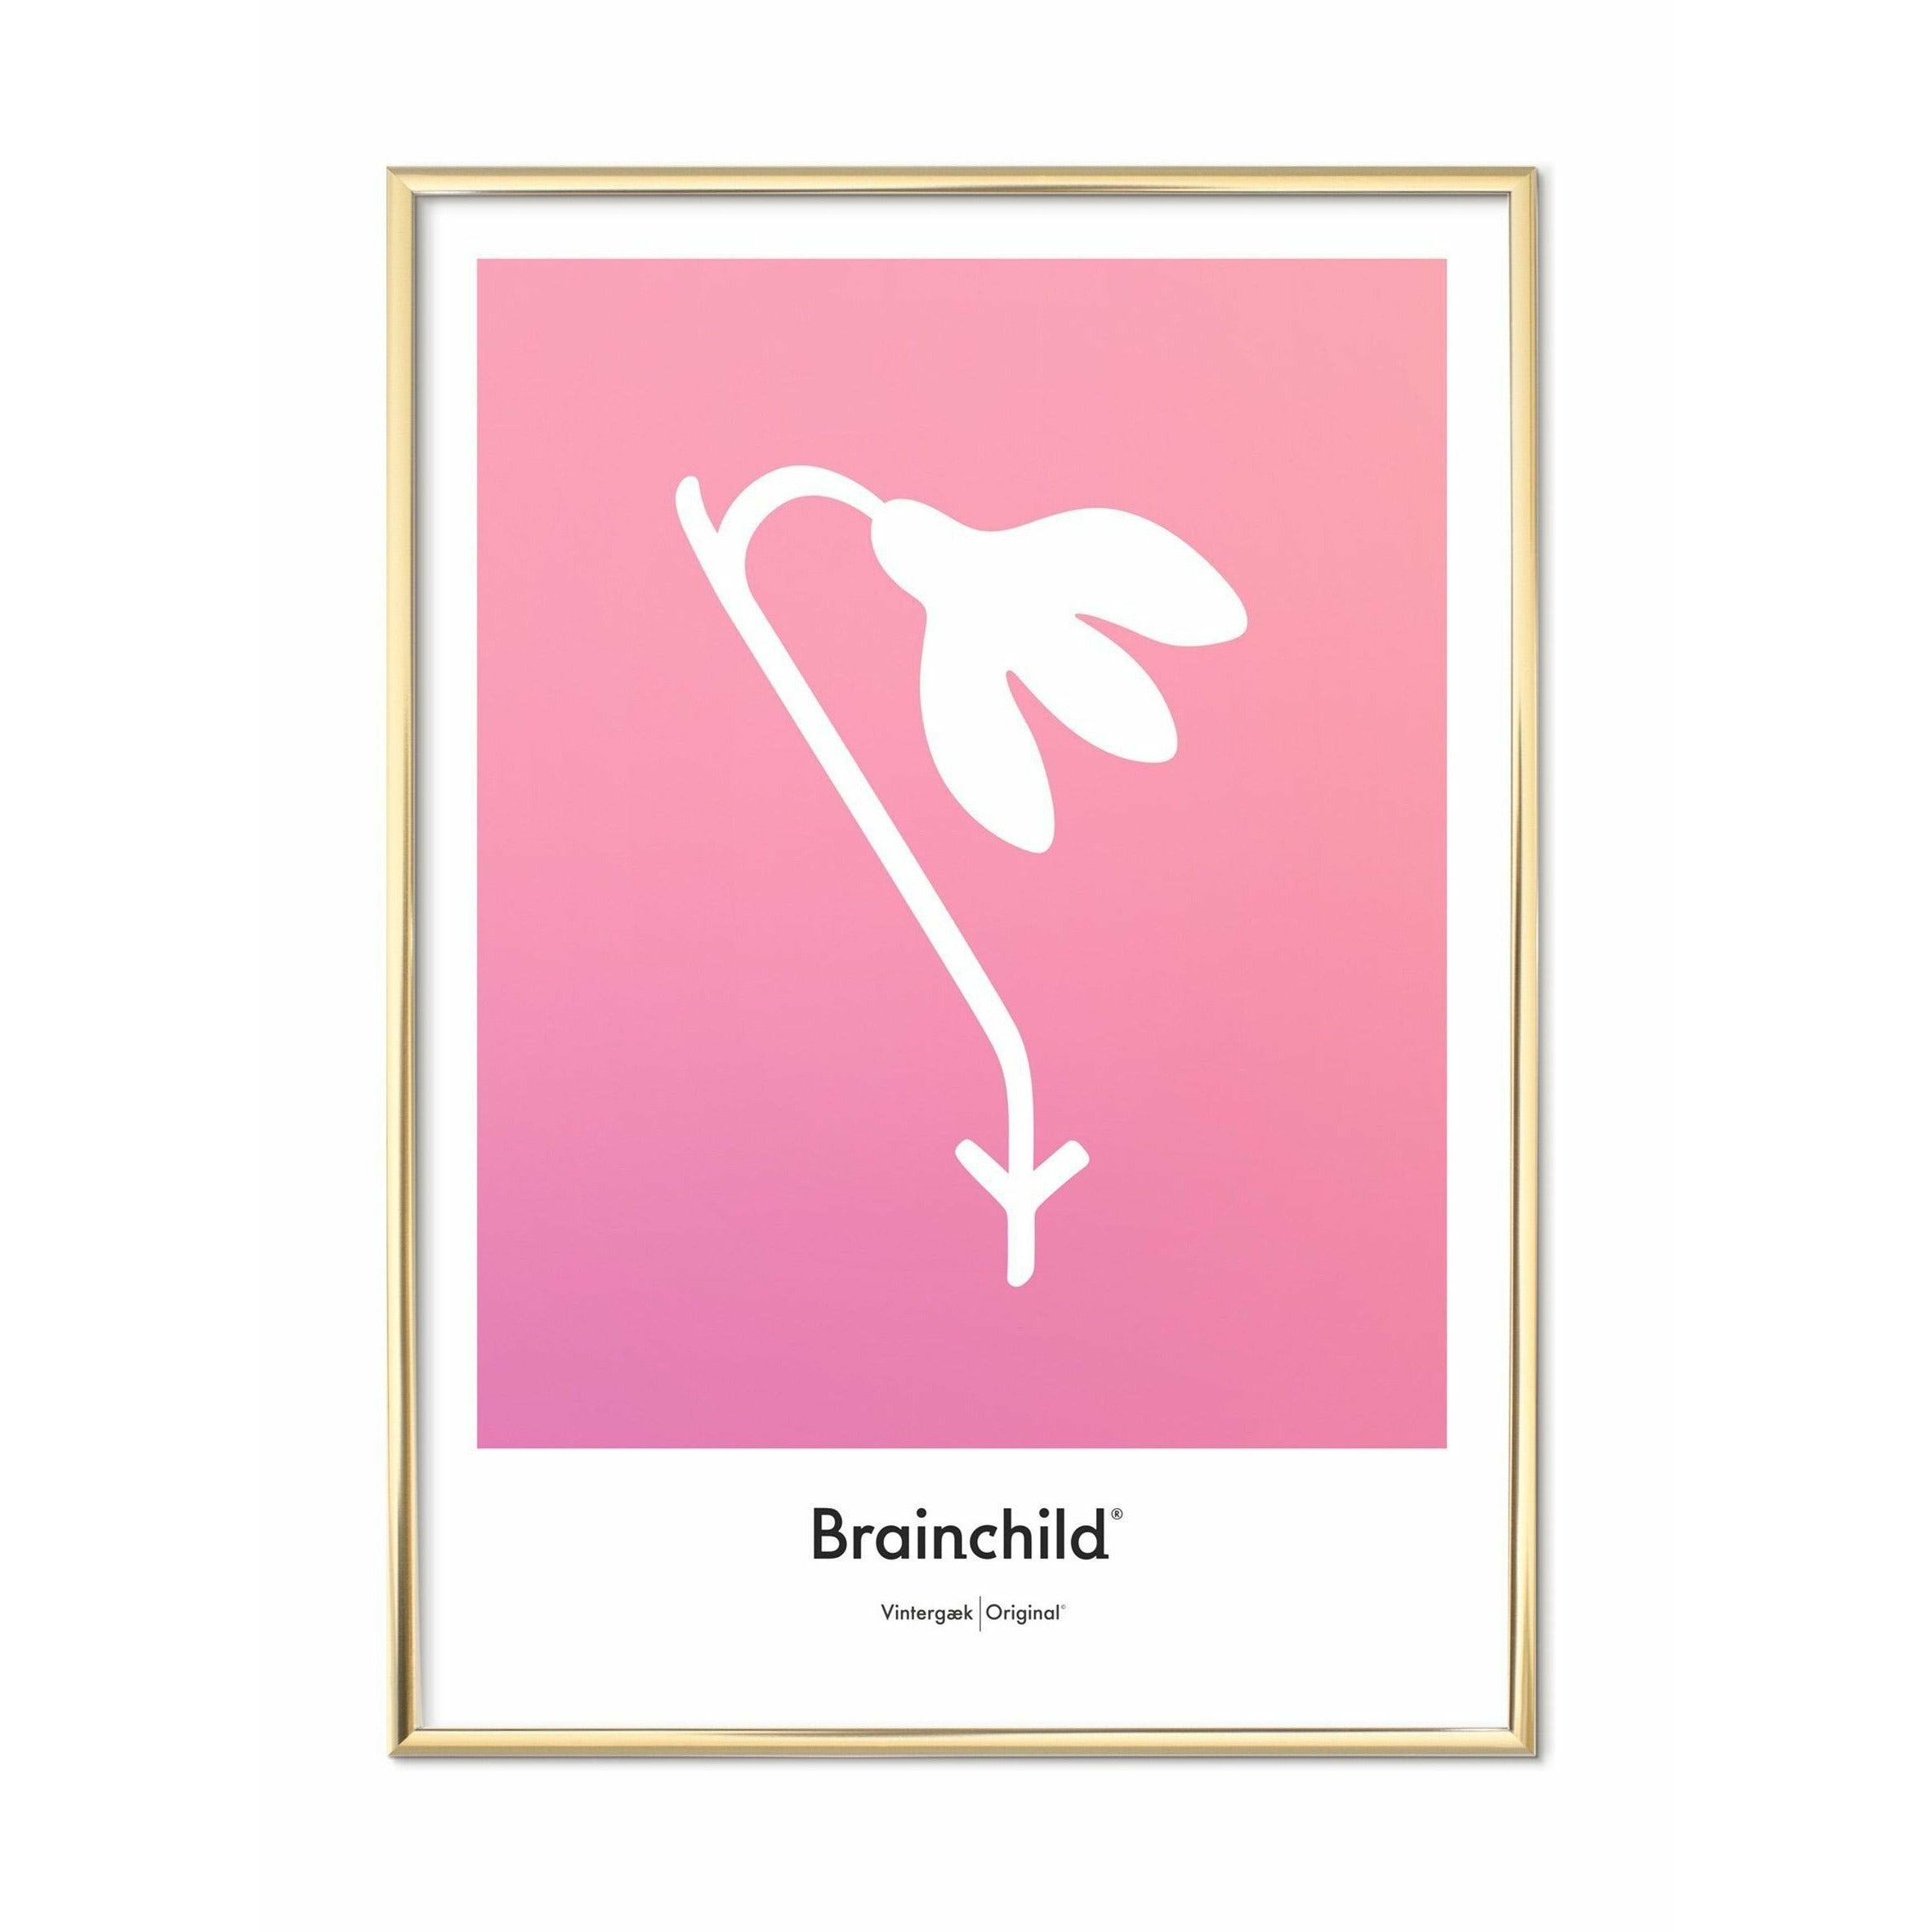 Brainchild Snowdropsontwerppictogram Poster, messing gekleurd frame 70 x100 cm, roze